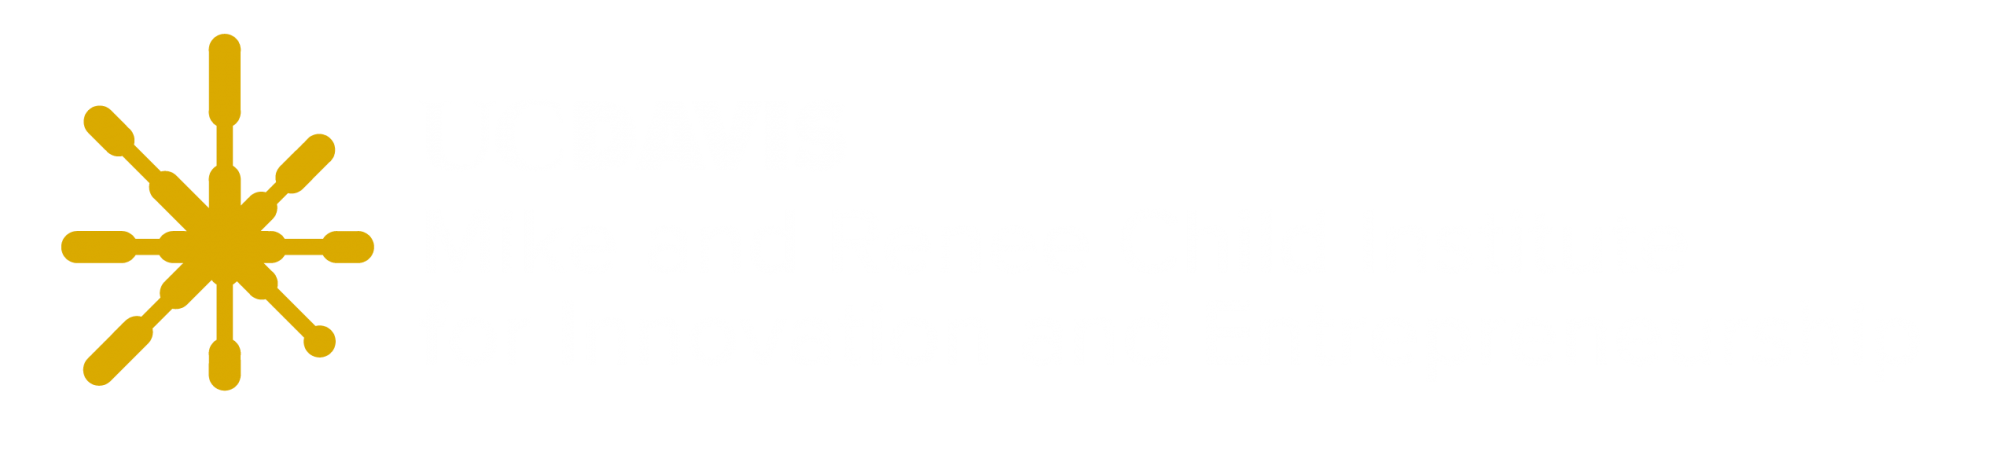 UC Davis Institute for Innovation and Entrepreneurship logo